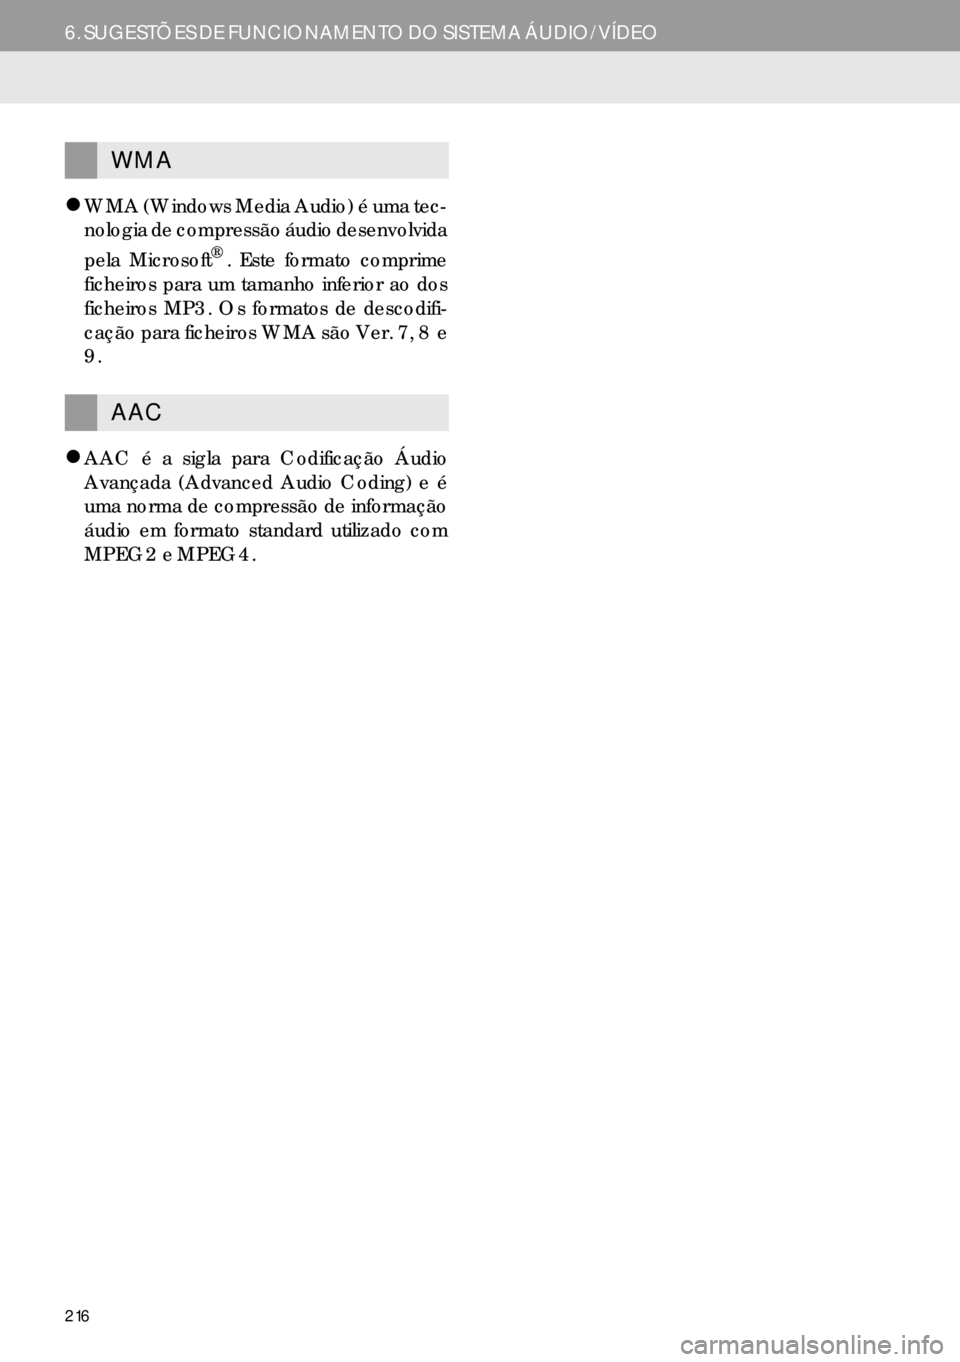 Lexus IS300h 2017  Manual de navegação (in Portuguese) 216
6. SUGESTÕES DE FUNCIONAMENTO DO SISTEMA ÁUDIO/VÍDEO
�zWMA (Windows Media Audio) é uma tec-
nologia de compressão áudio desenvolvida
pela Microsoft
®. Este formato comprime
ficheiros para u